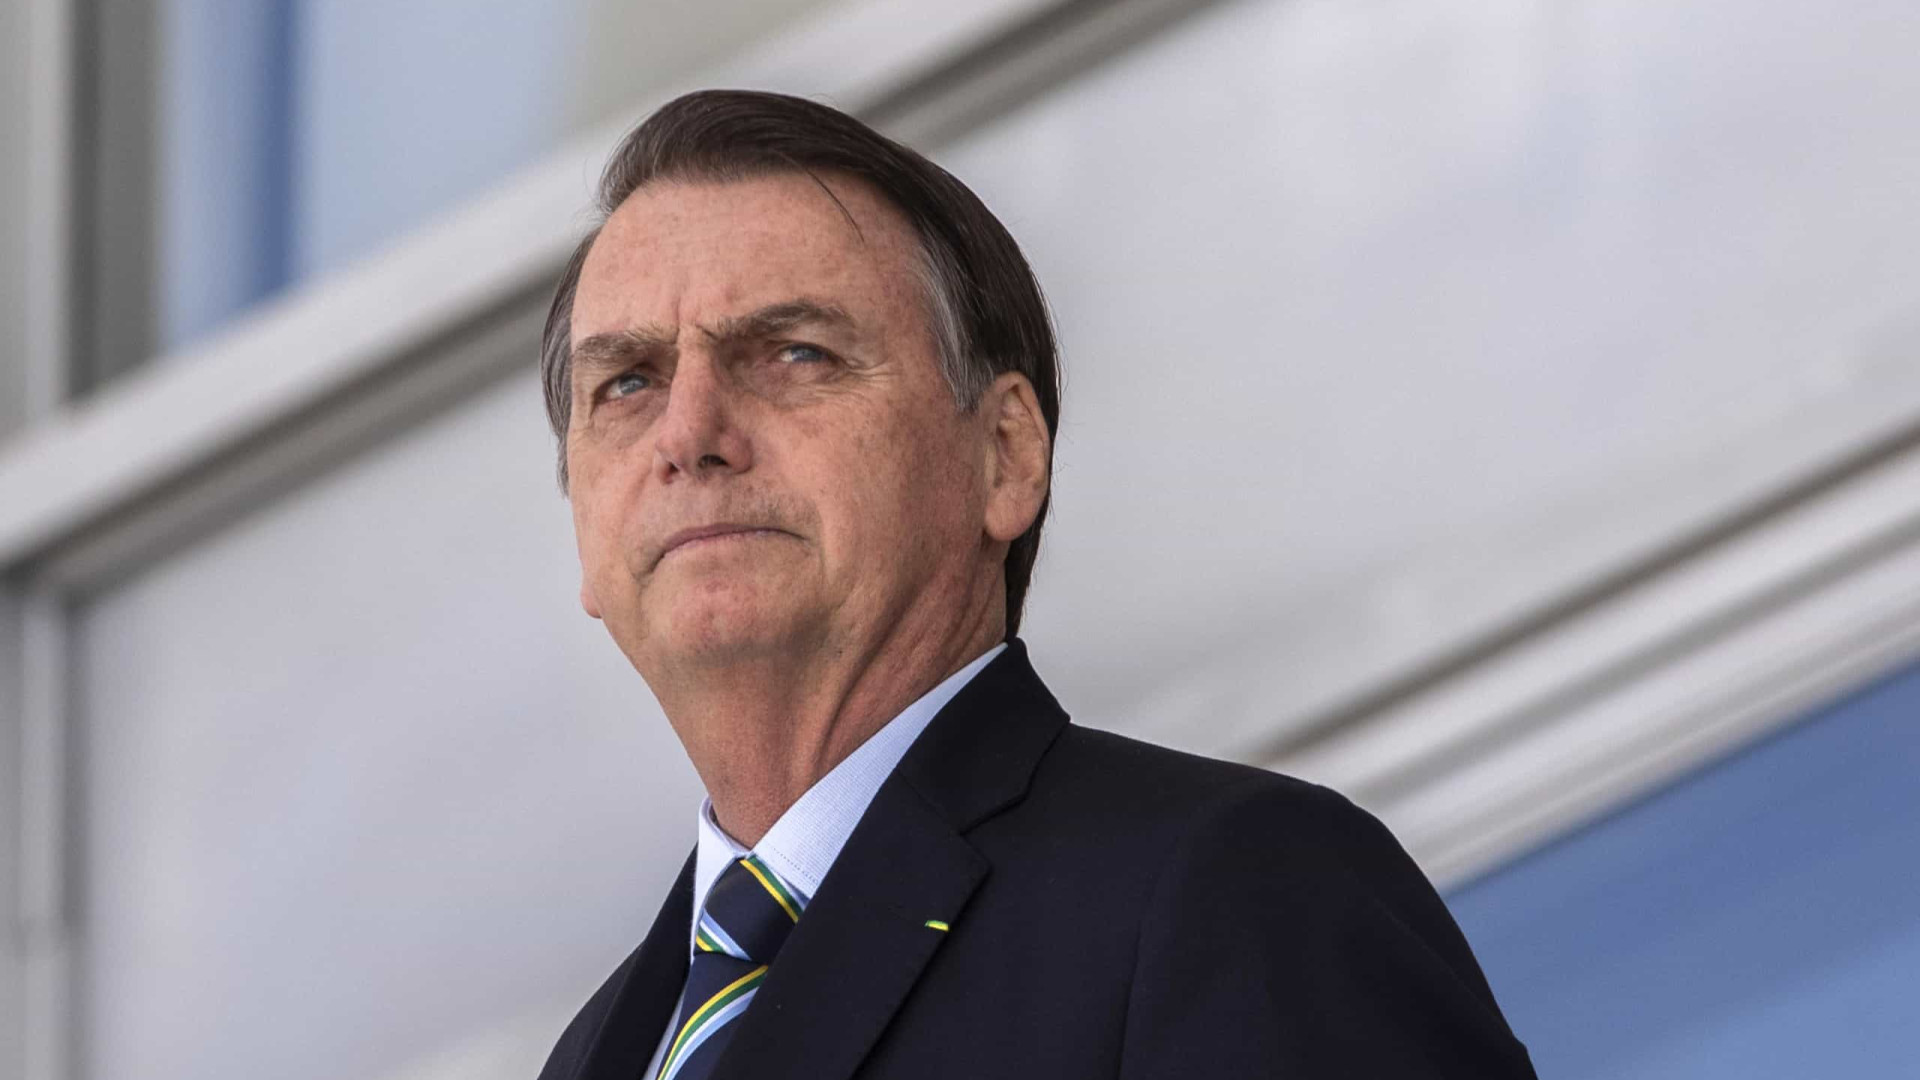 Internautas repetem pergunta que levou Bolsonaro a ameaçar jornalista